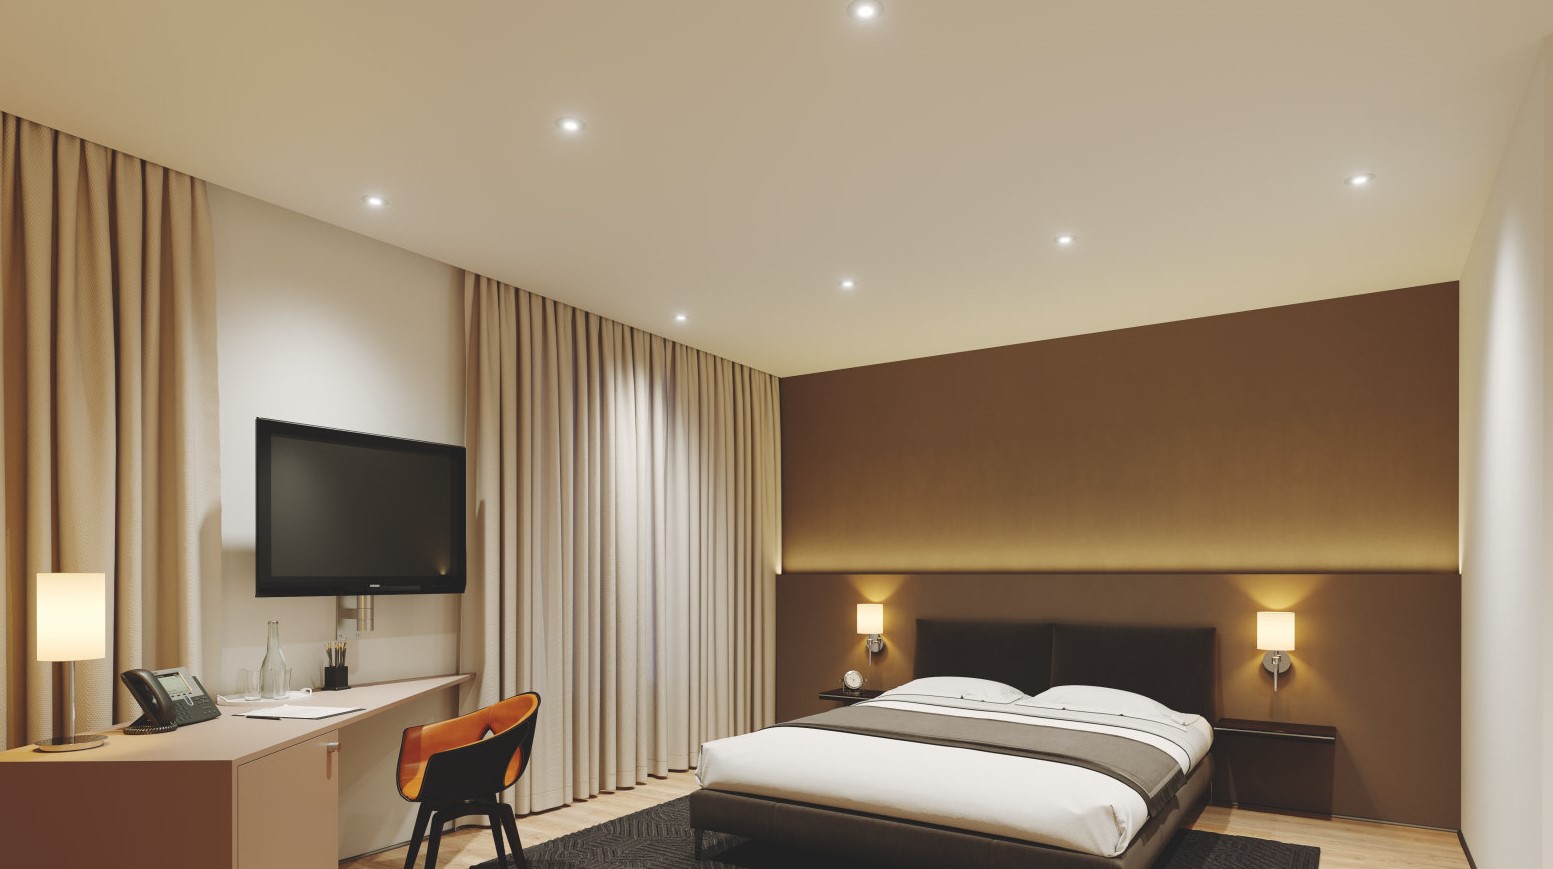 Illuminazione camera da letto: stratifica le luci